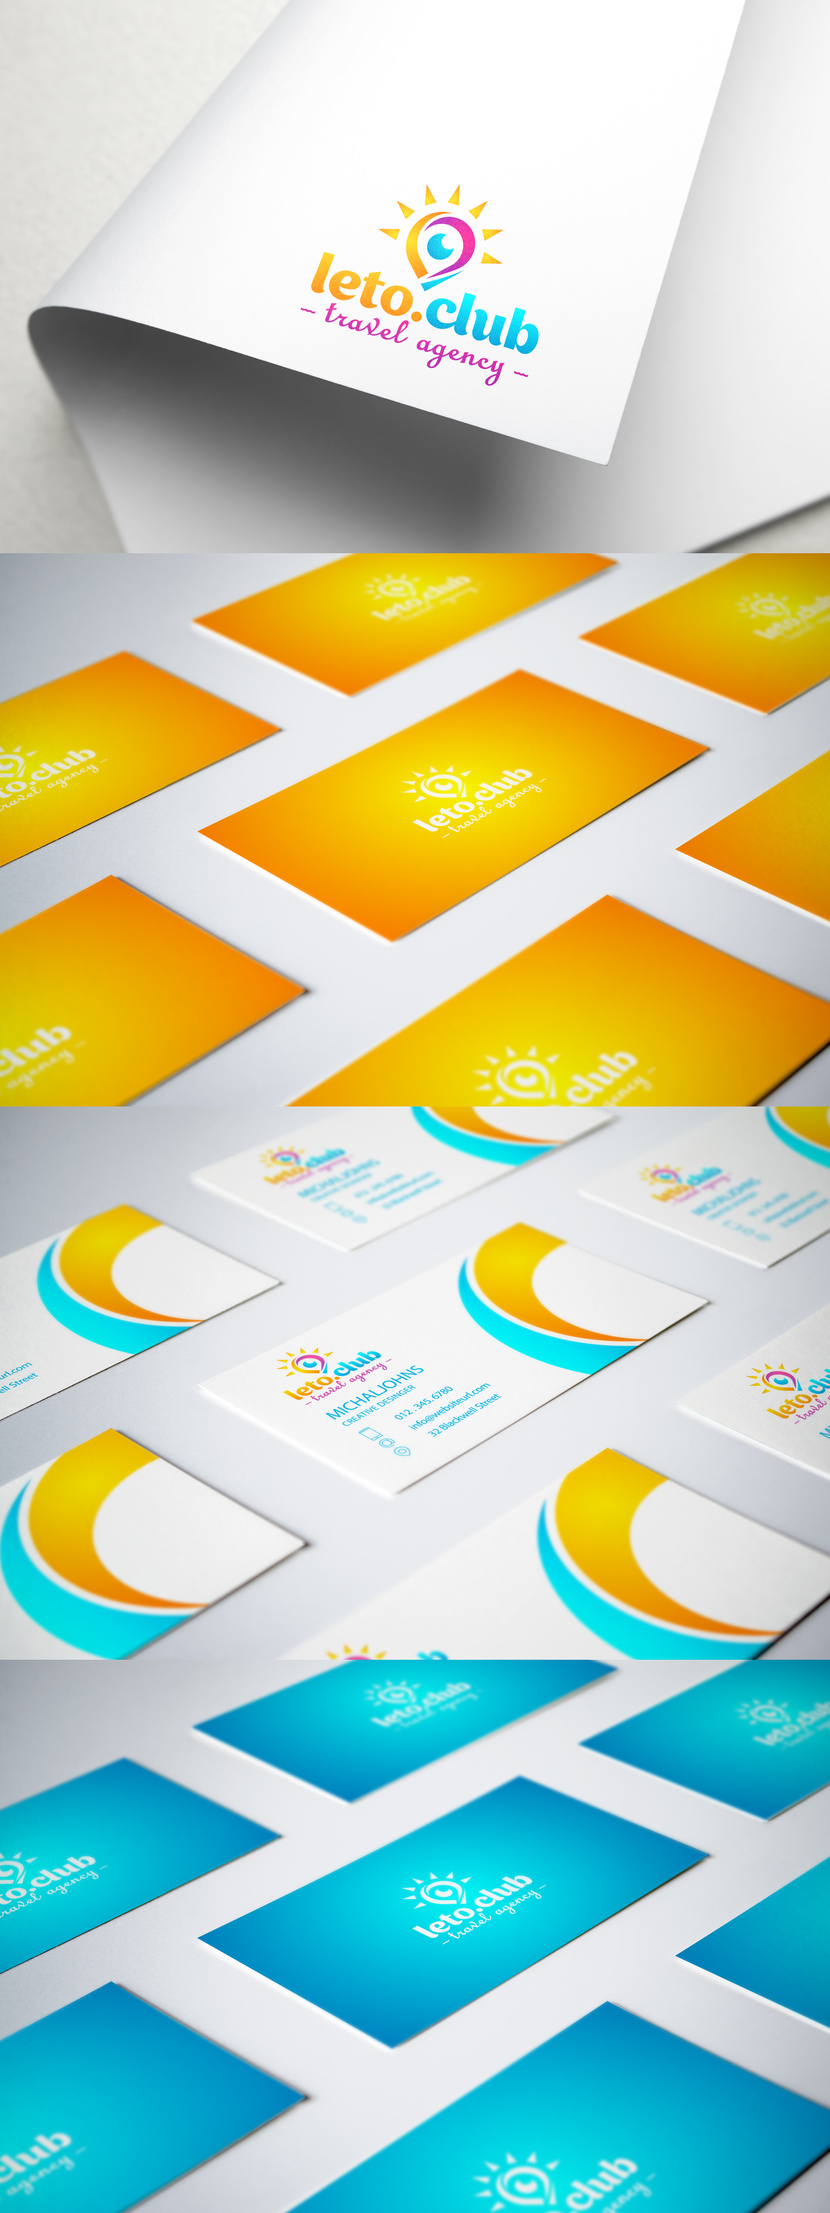 Разработка логотипа и фирменного стиля для туристического агенства  -  автор сара бернар